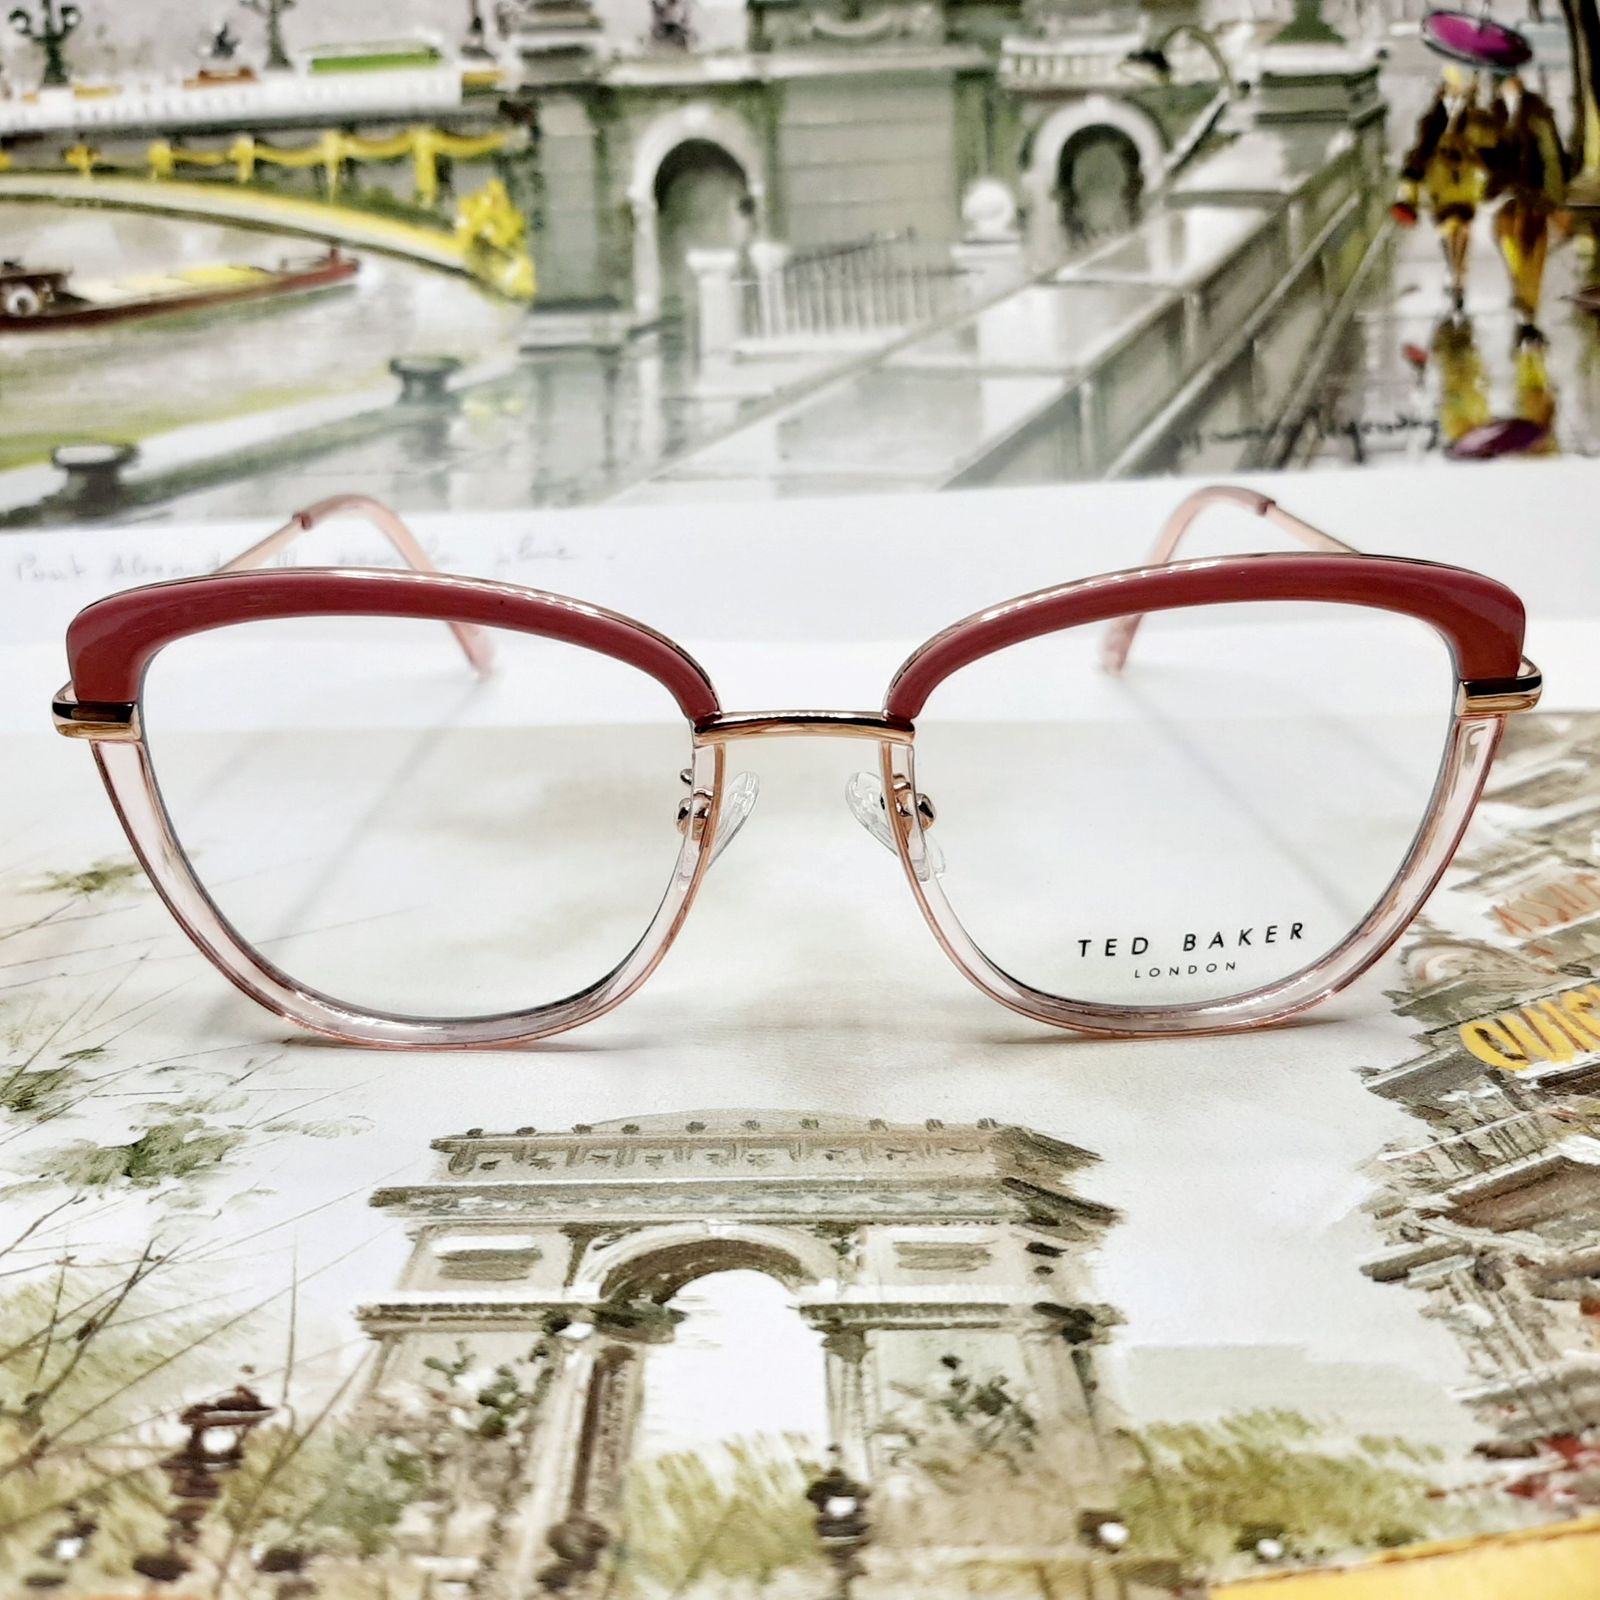 فریم عینک طبی زنانه تد بیکر مدل WB609c373 -  - 3